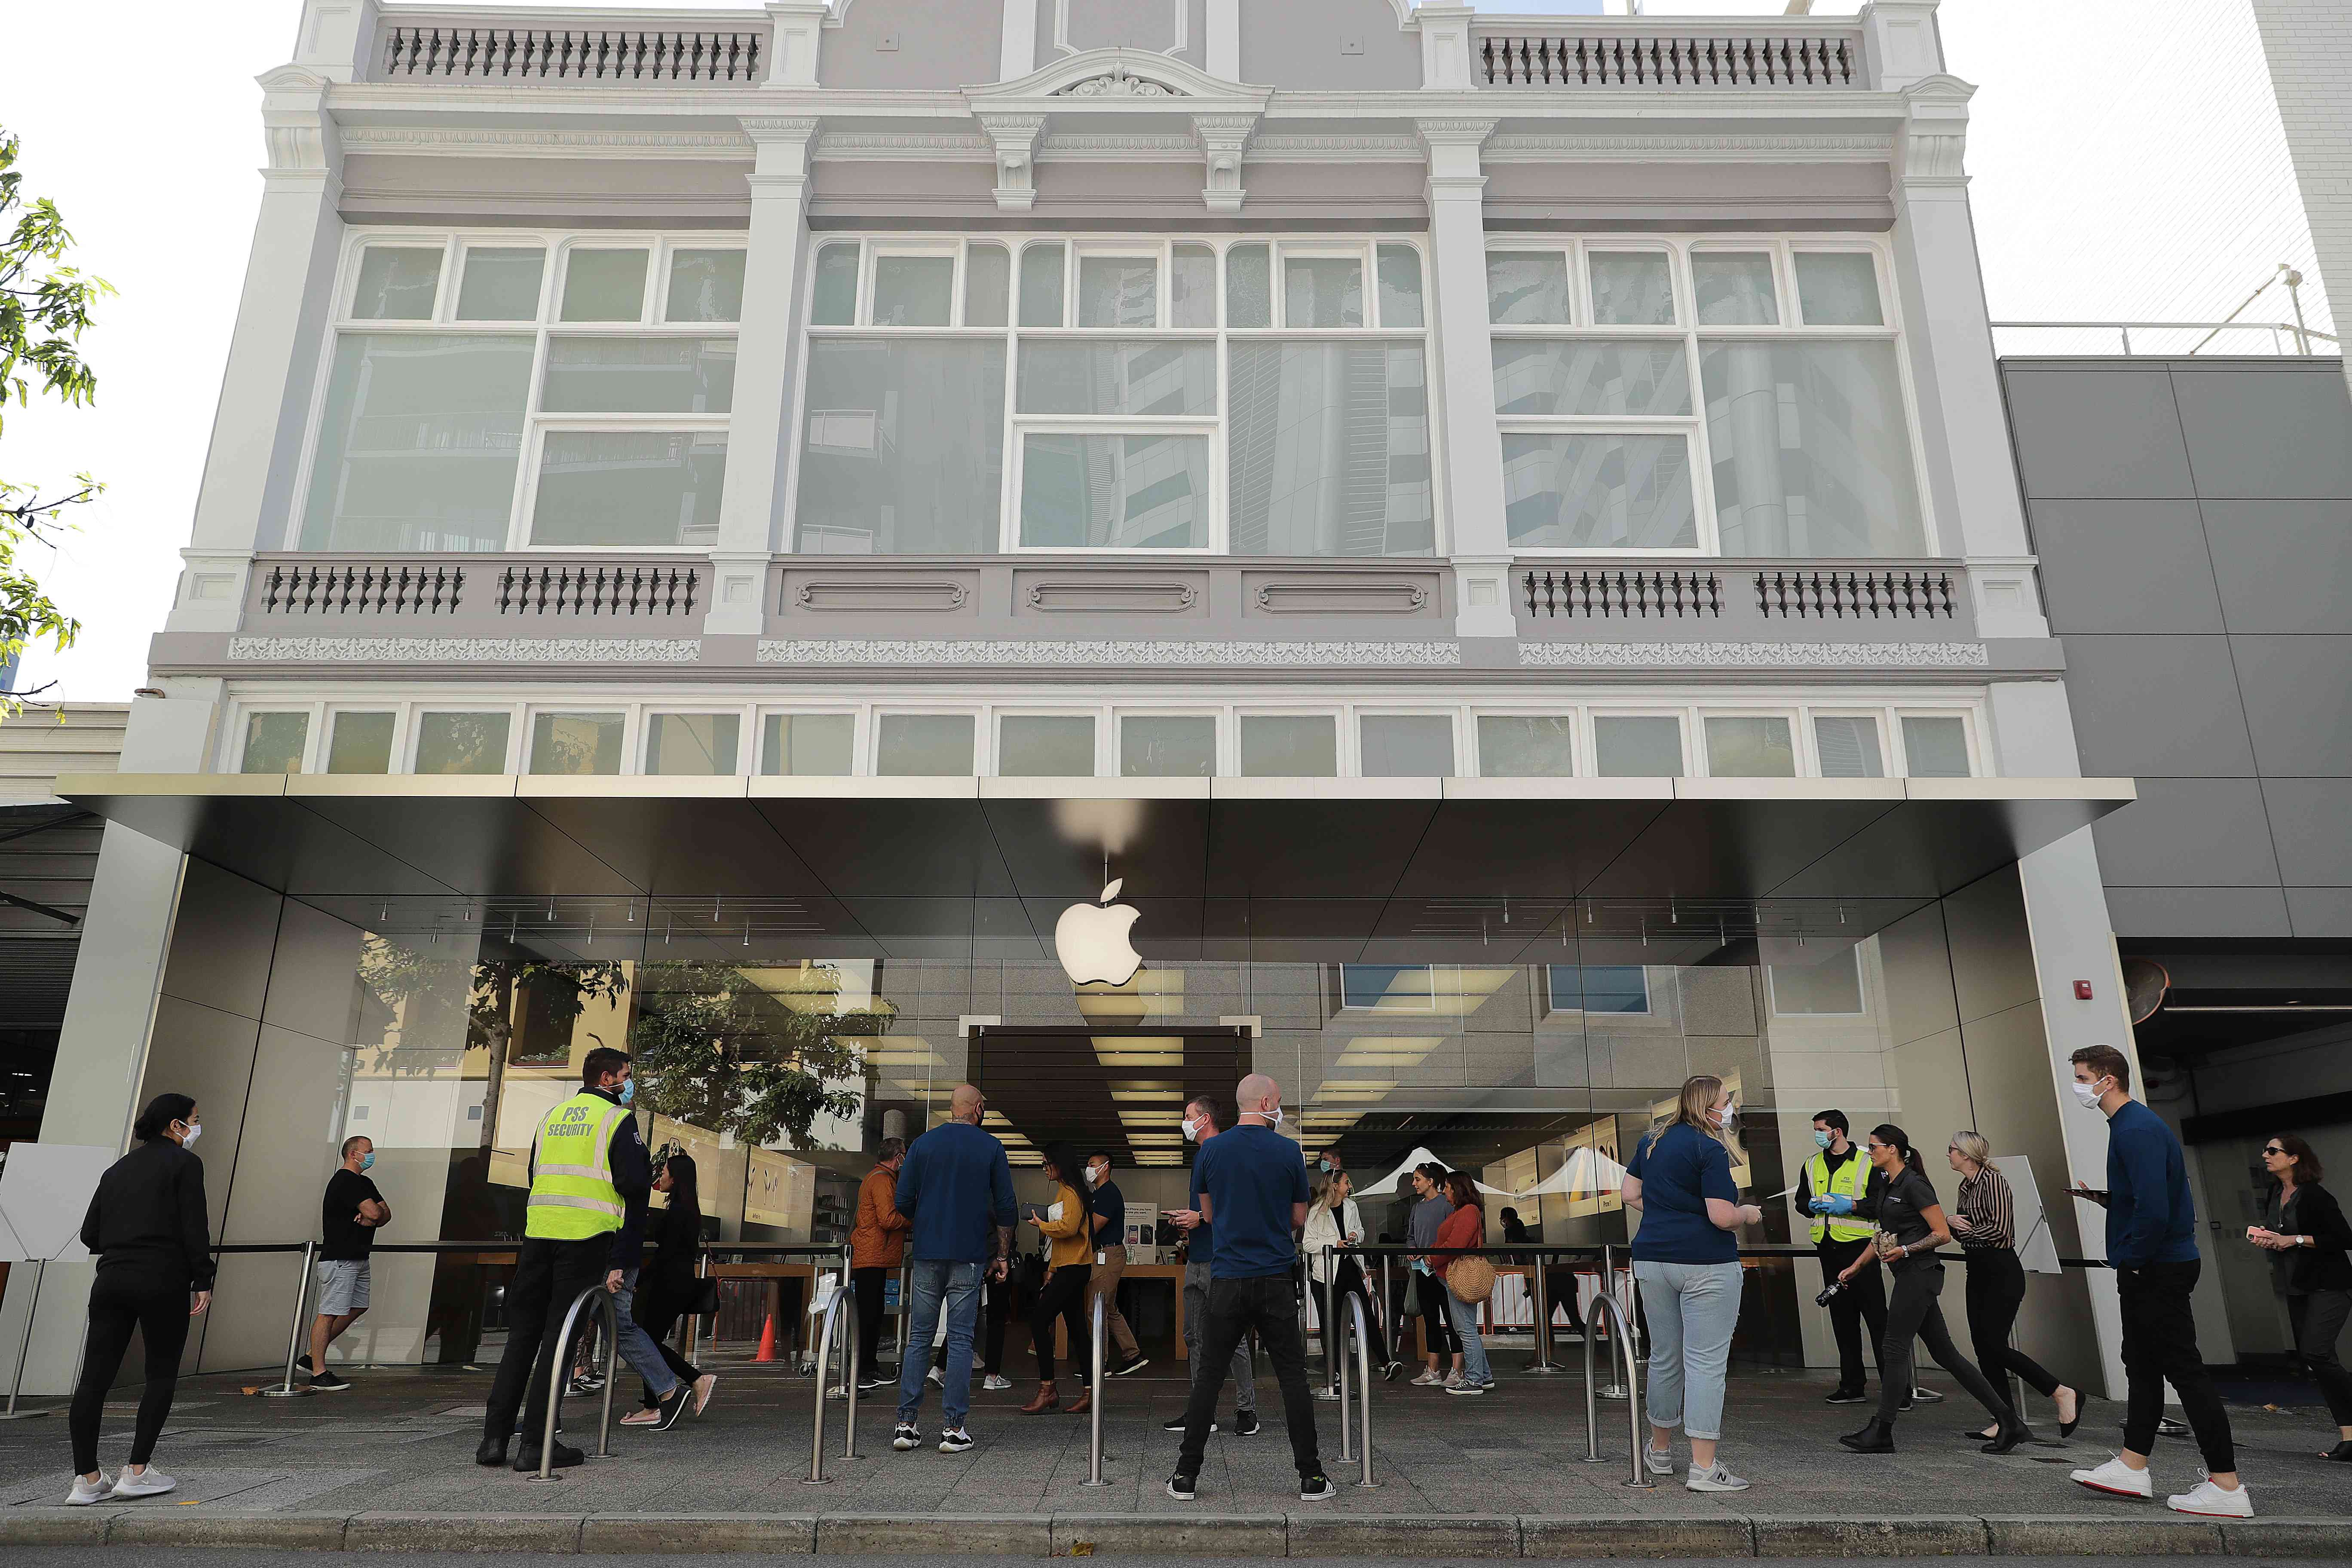 A equipe da Apple faz perguntas sobre a saúde das pessoas que entram na loja da Apple no CBD de Perth